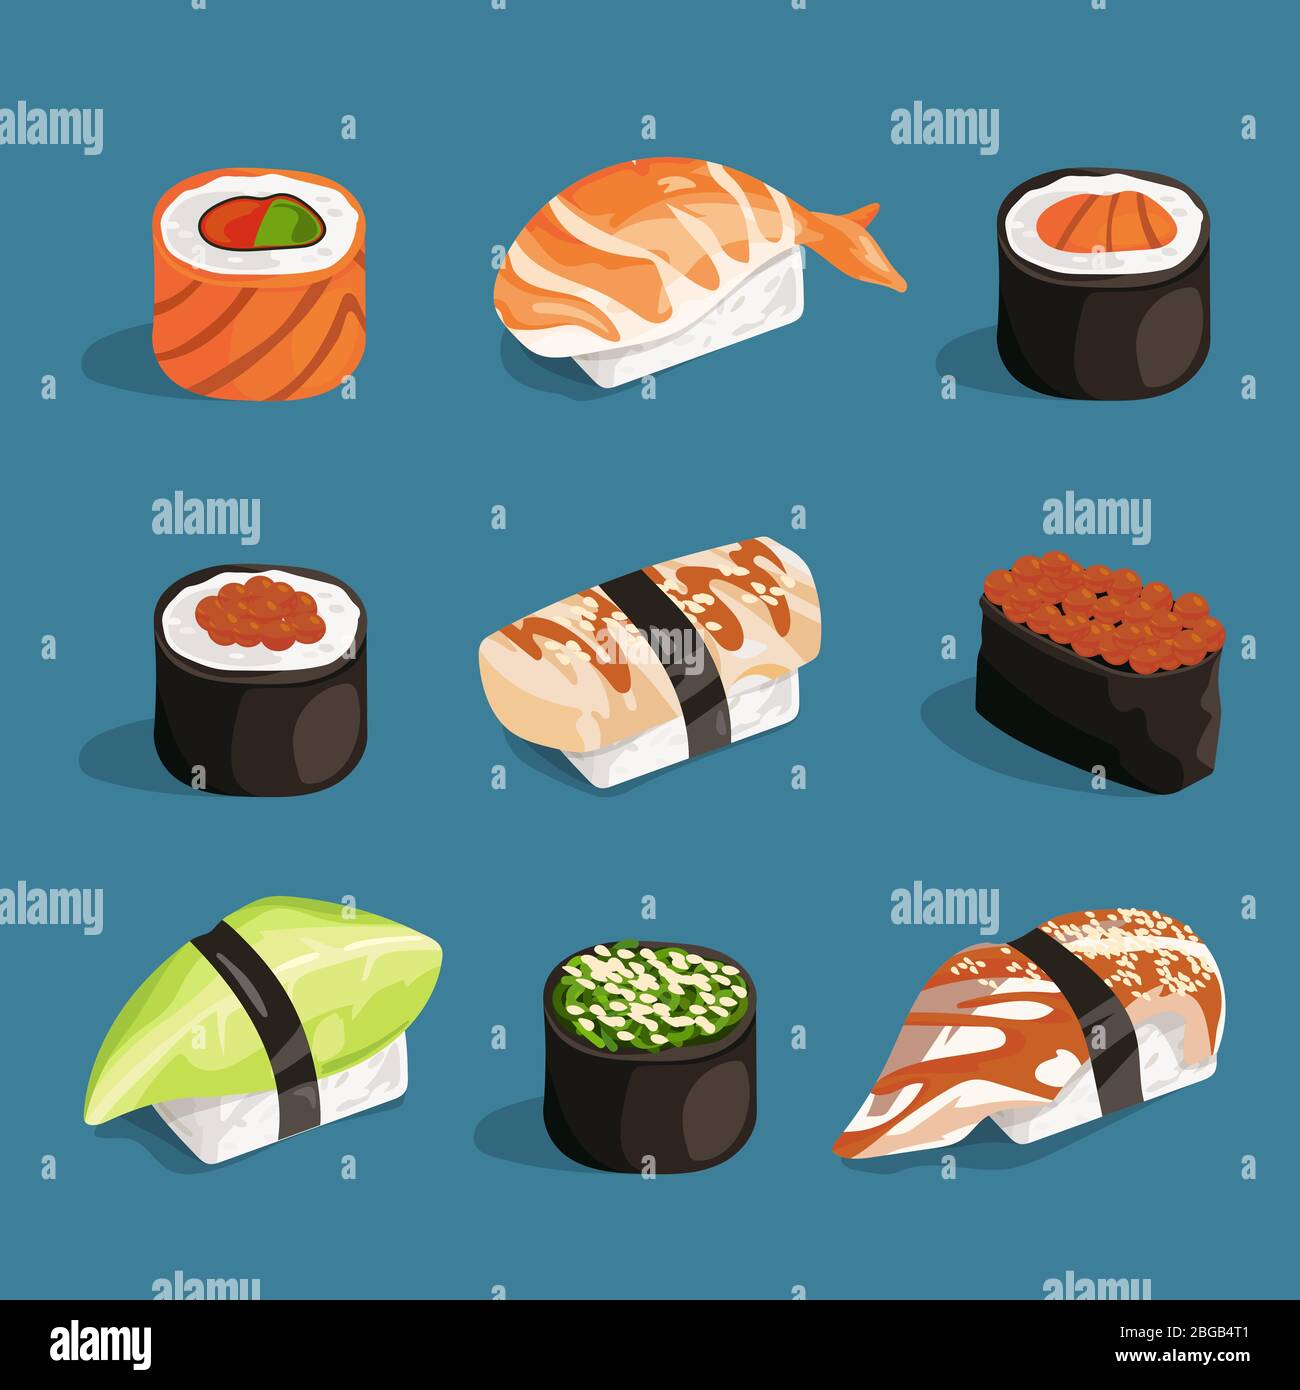 Conjunto de comida asiática clásica. Arroz blanco, sushi, salmón nori y diferentes panecillos. Imágenes vectoriales en estilo de dibujos animados Ilustración del Vector